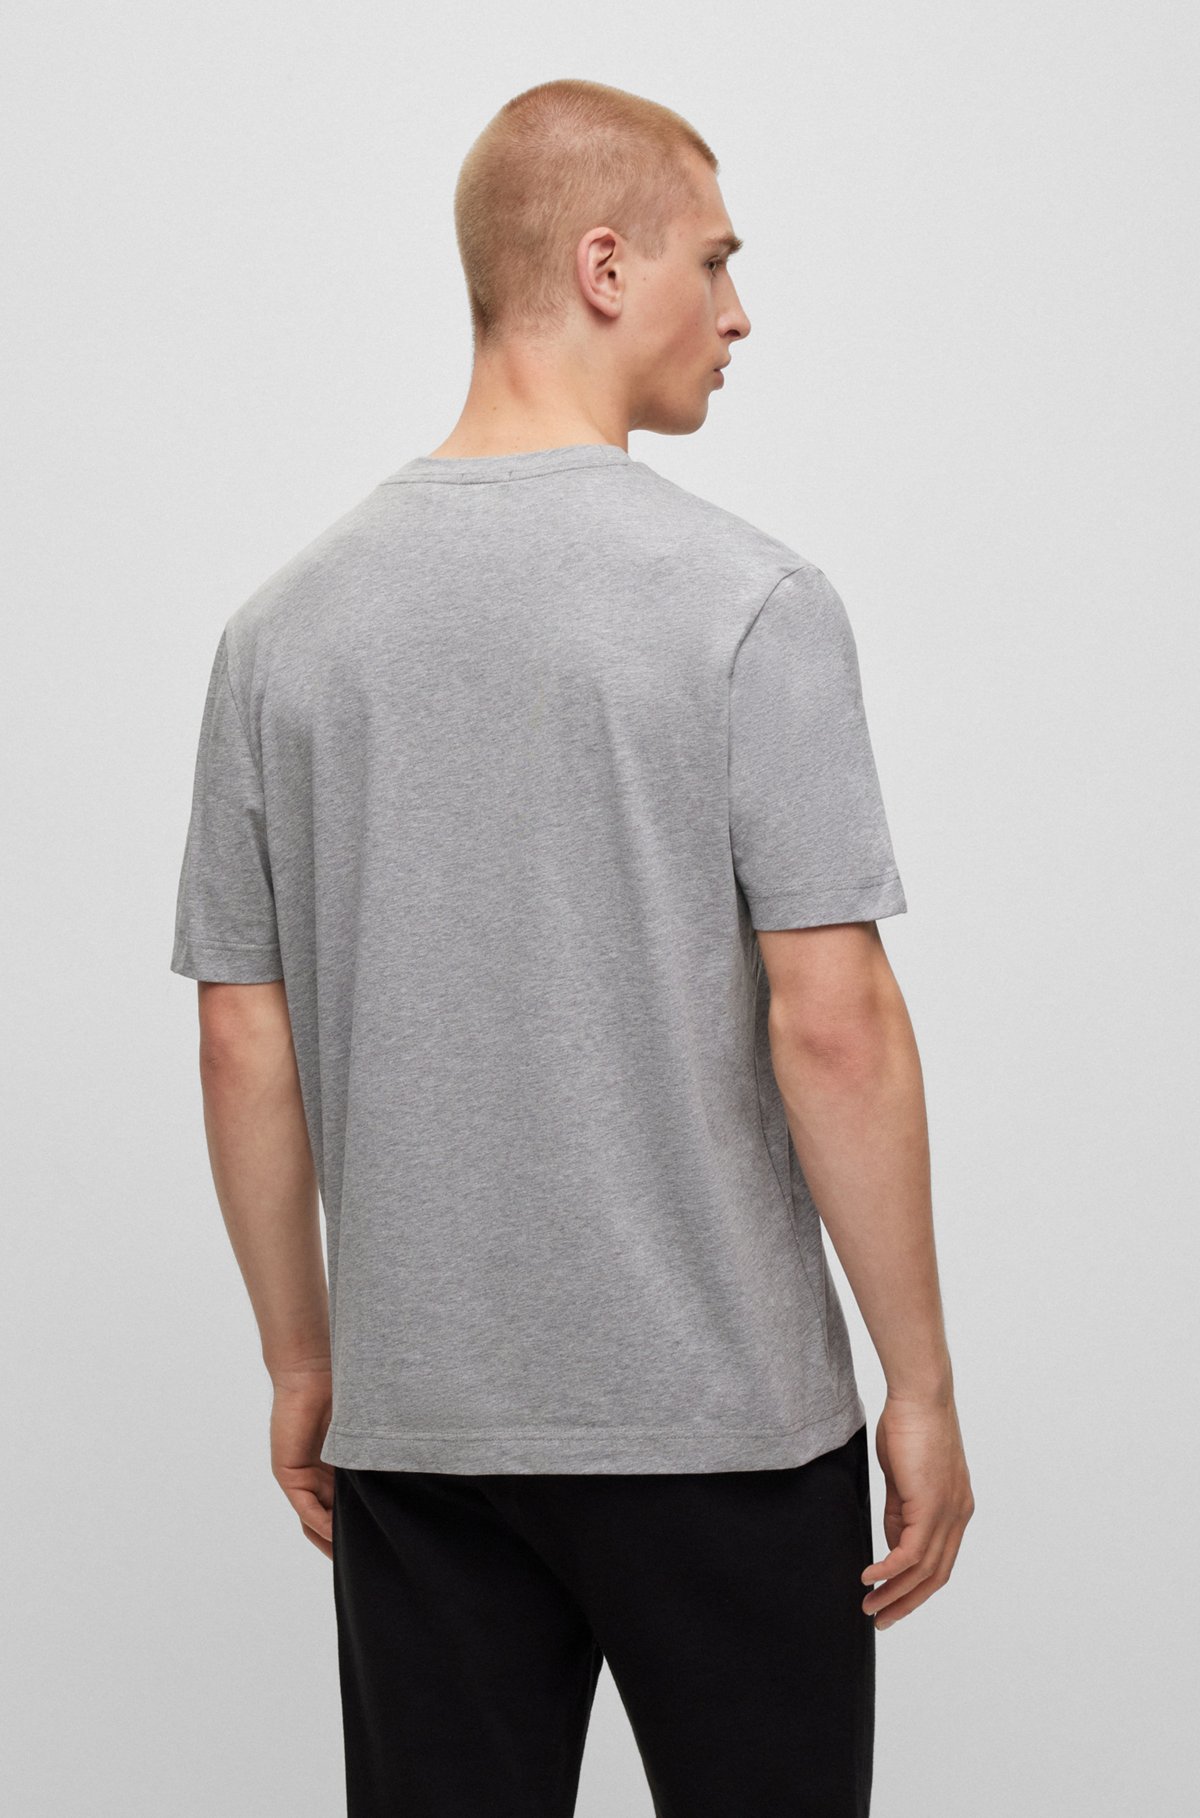 T-shirt Relaxed Fit en coton stretch, à logo imprimé, Gris chiné